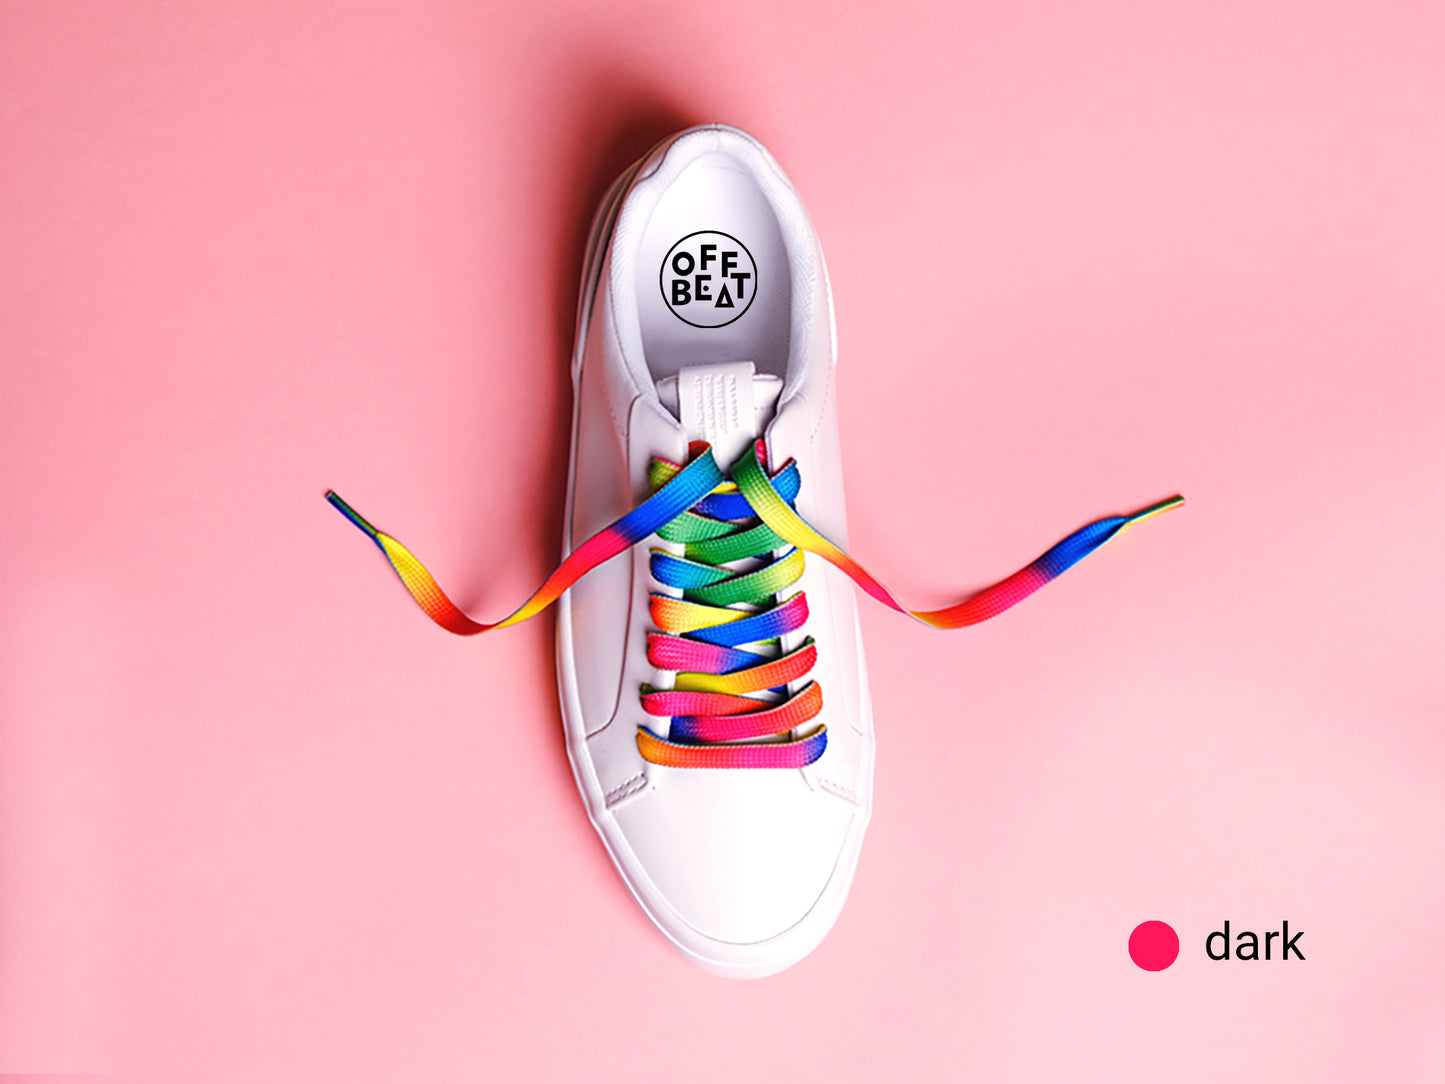 Rainbow shoelaces